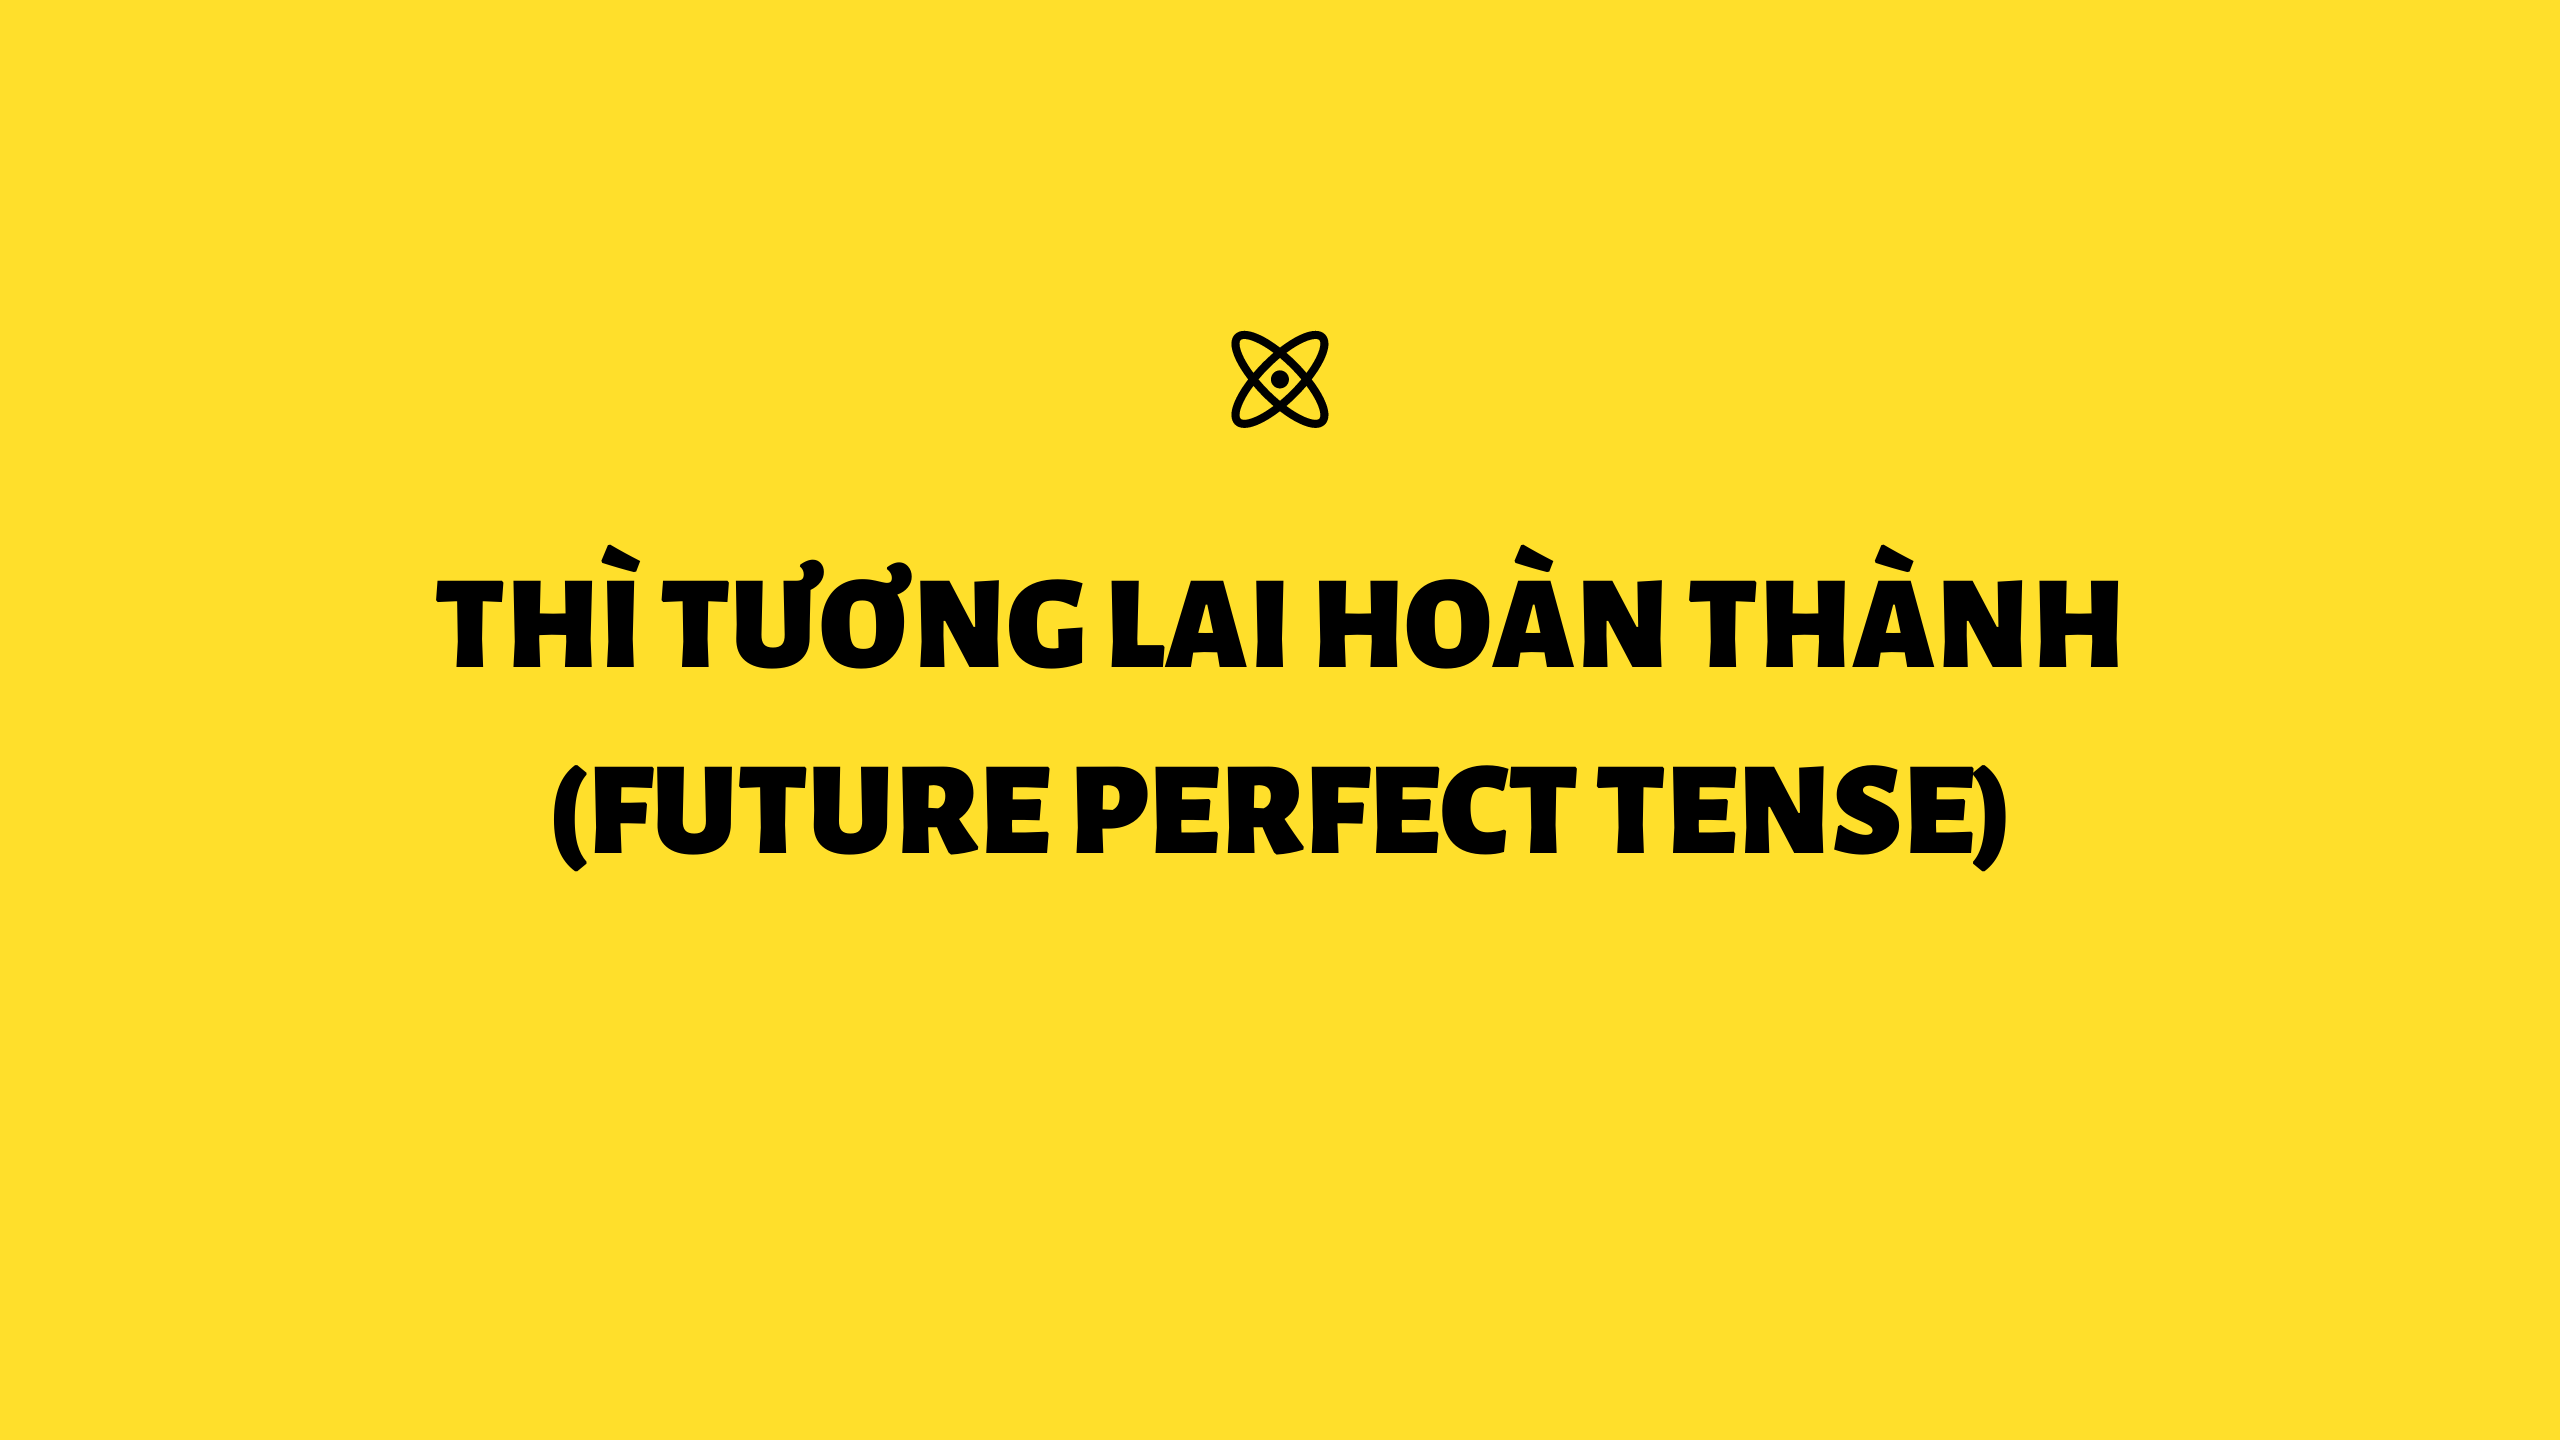 Thì Tương lai hoàn thành (Future perfect tense) trong tiếng Anh